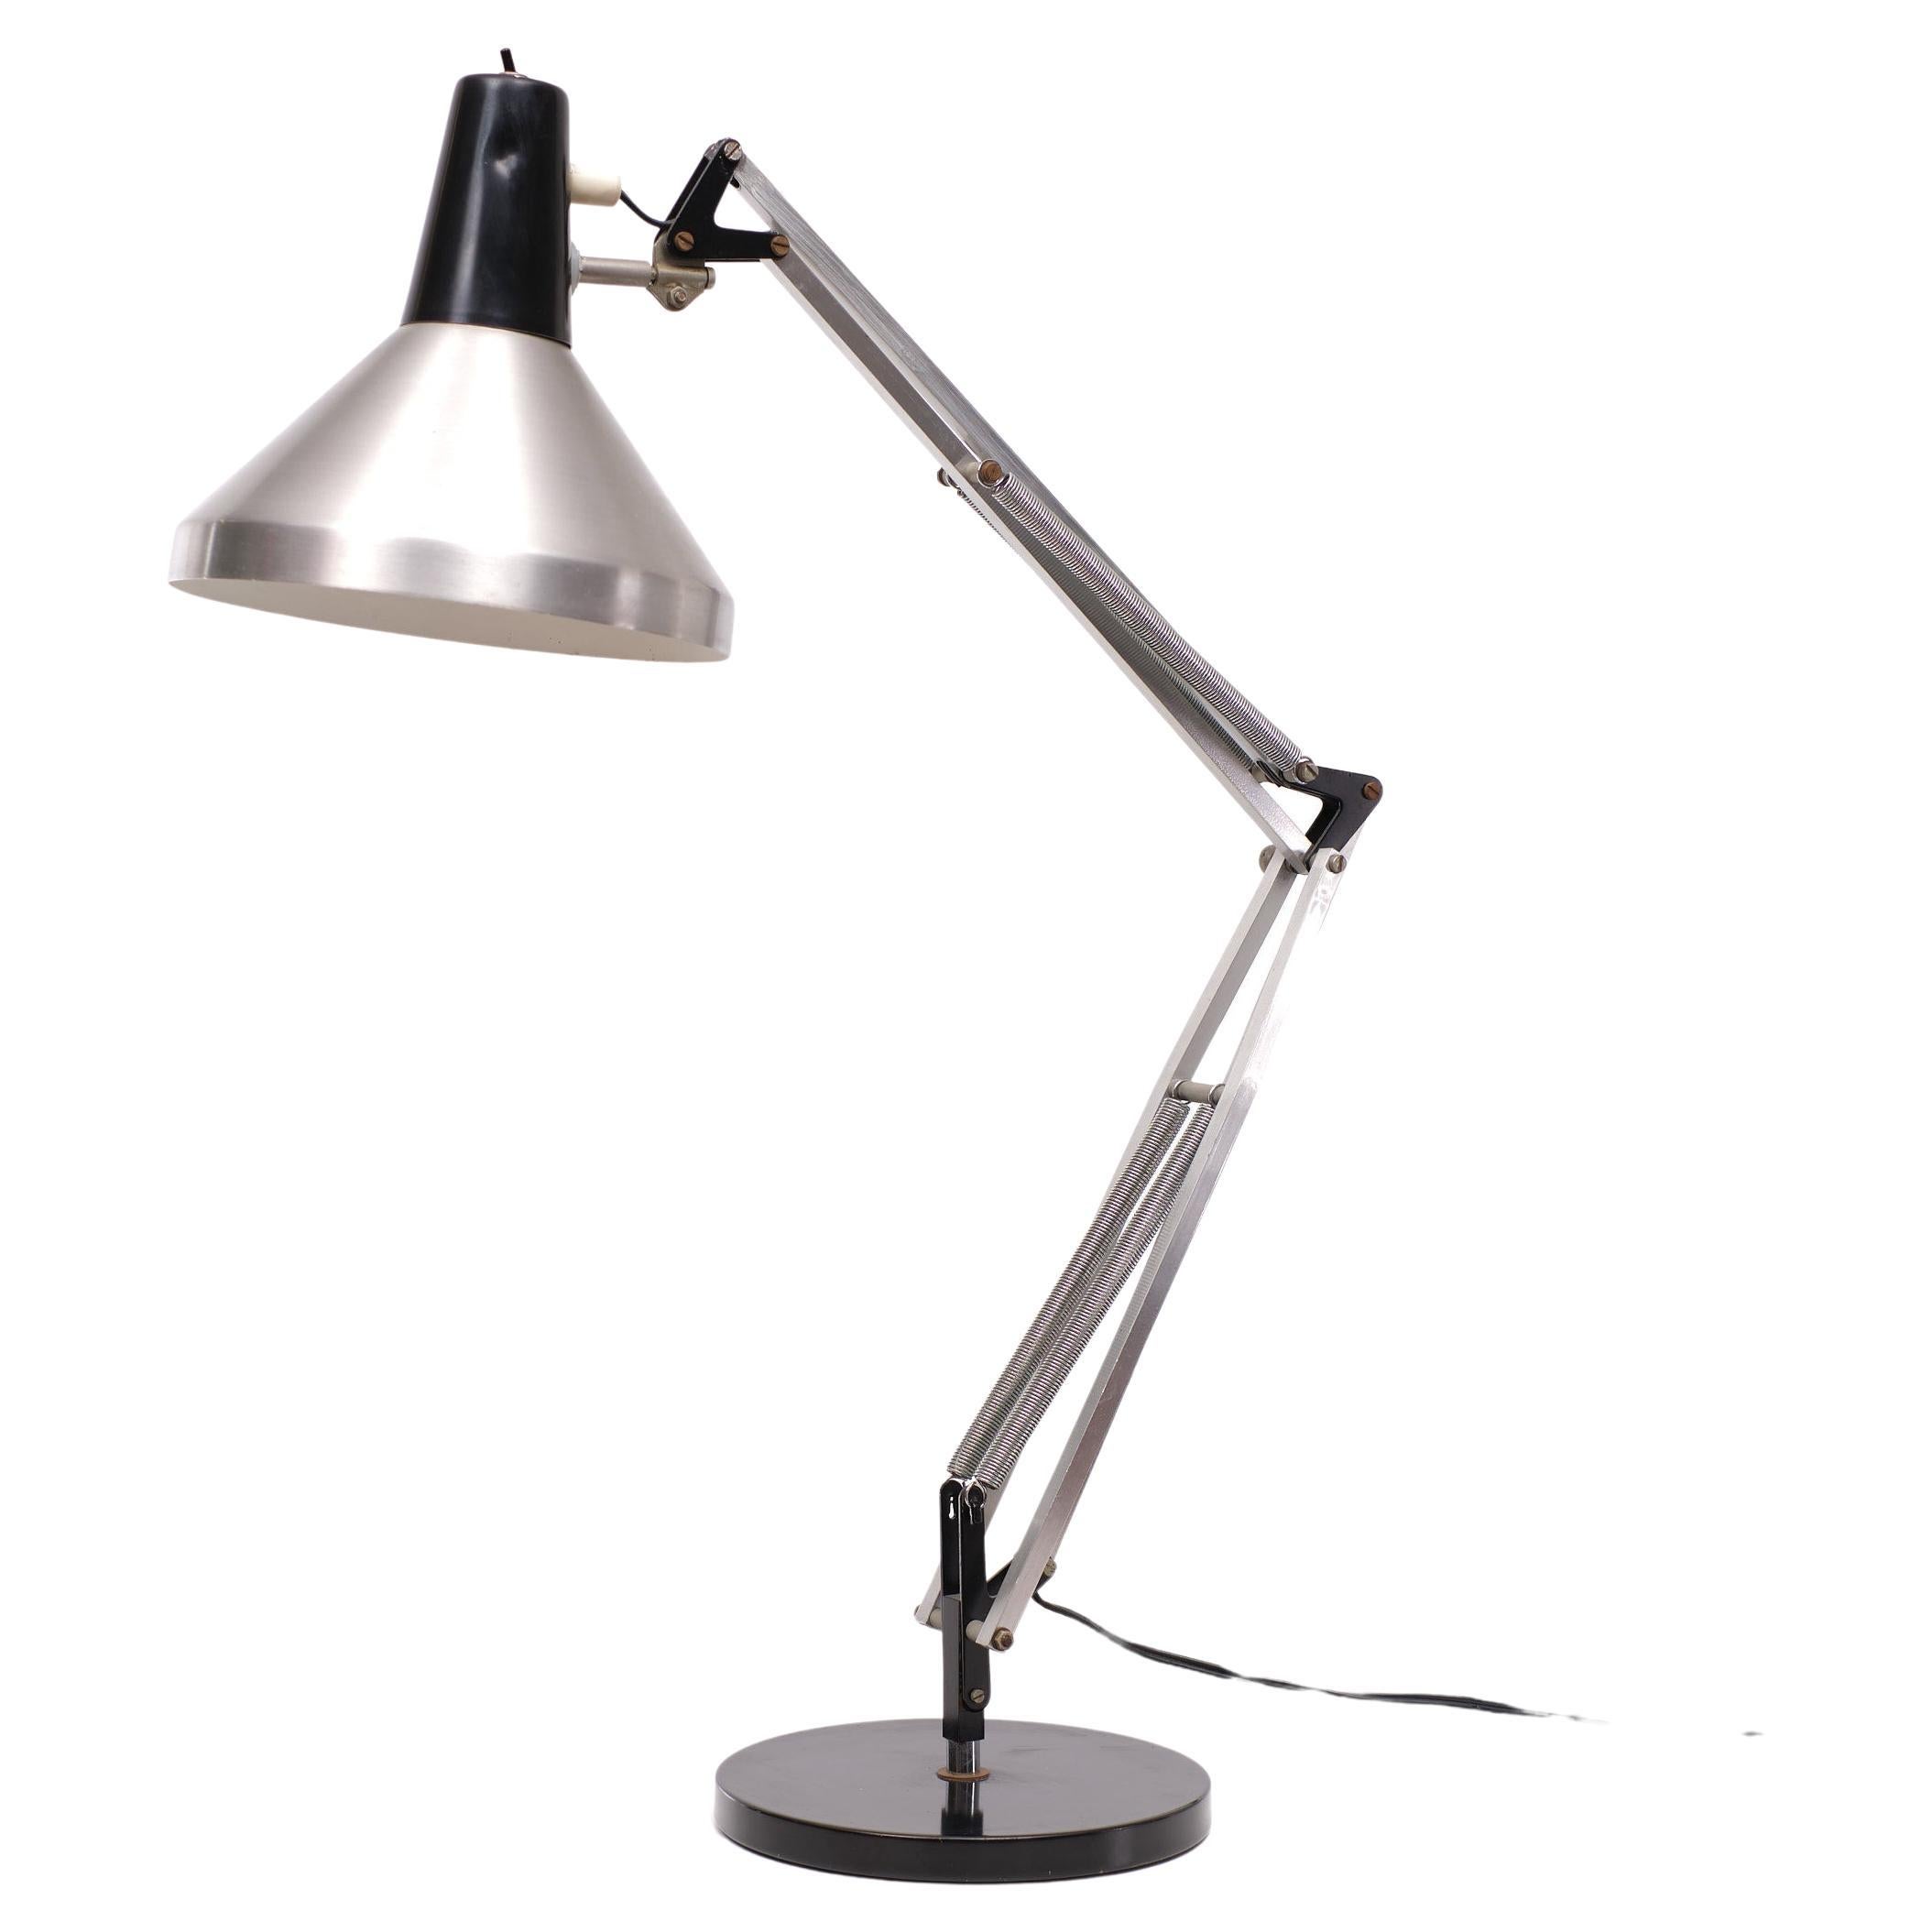 Dutch Design esta lámpara de sobremesa o escritorio de Hala Zeist Architect. Modelo T9 
Años 60 Muy buen ejemplar. Funciona perfectamente. Luz en todas las direcciones que quieras.
Se necesita una bombilla E27 grande.